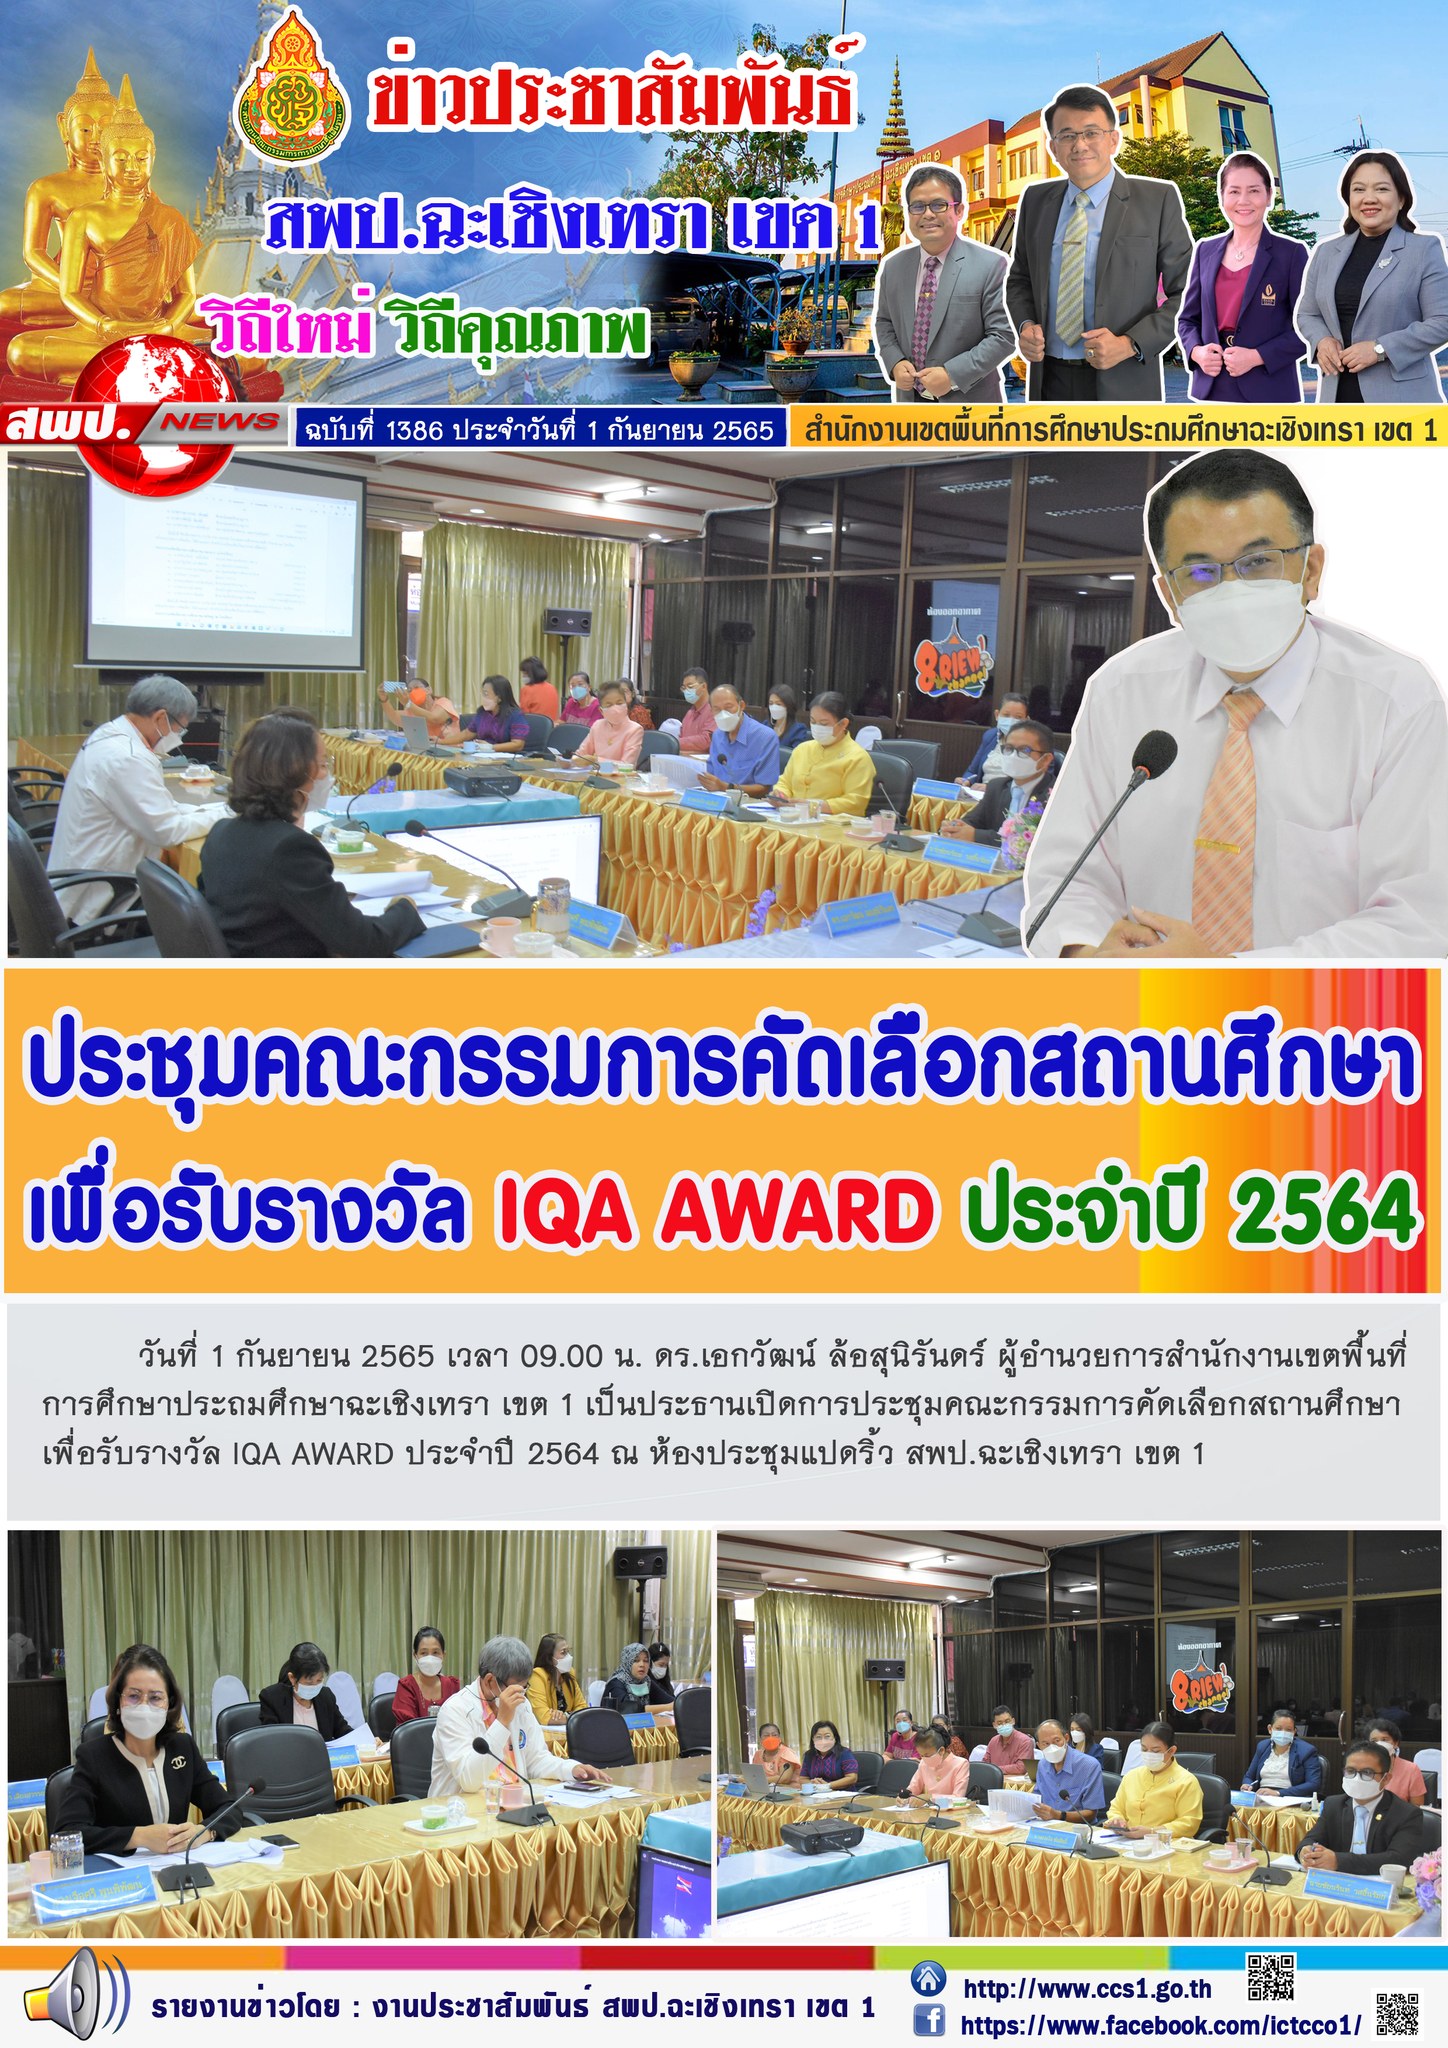 การประชุมคณะกรรมการคัดเลือกสถานศึกษา เพื่อรับรางวัล IQA AWARD ประจำปี 2564